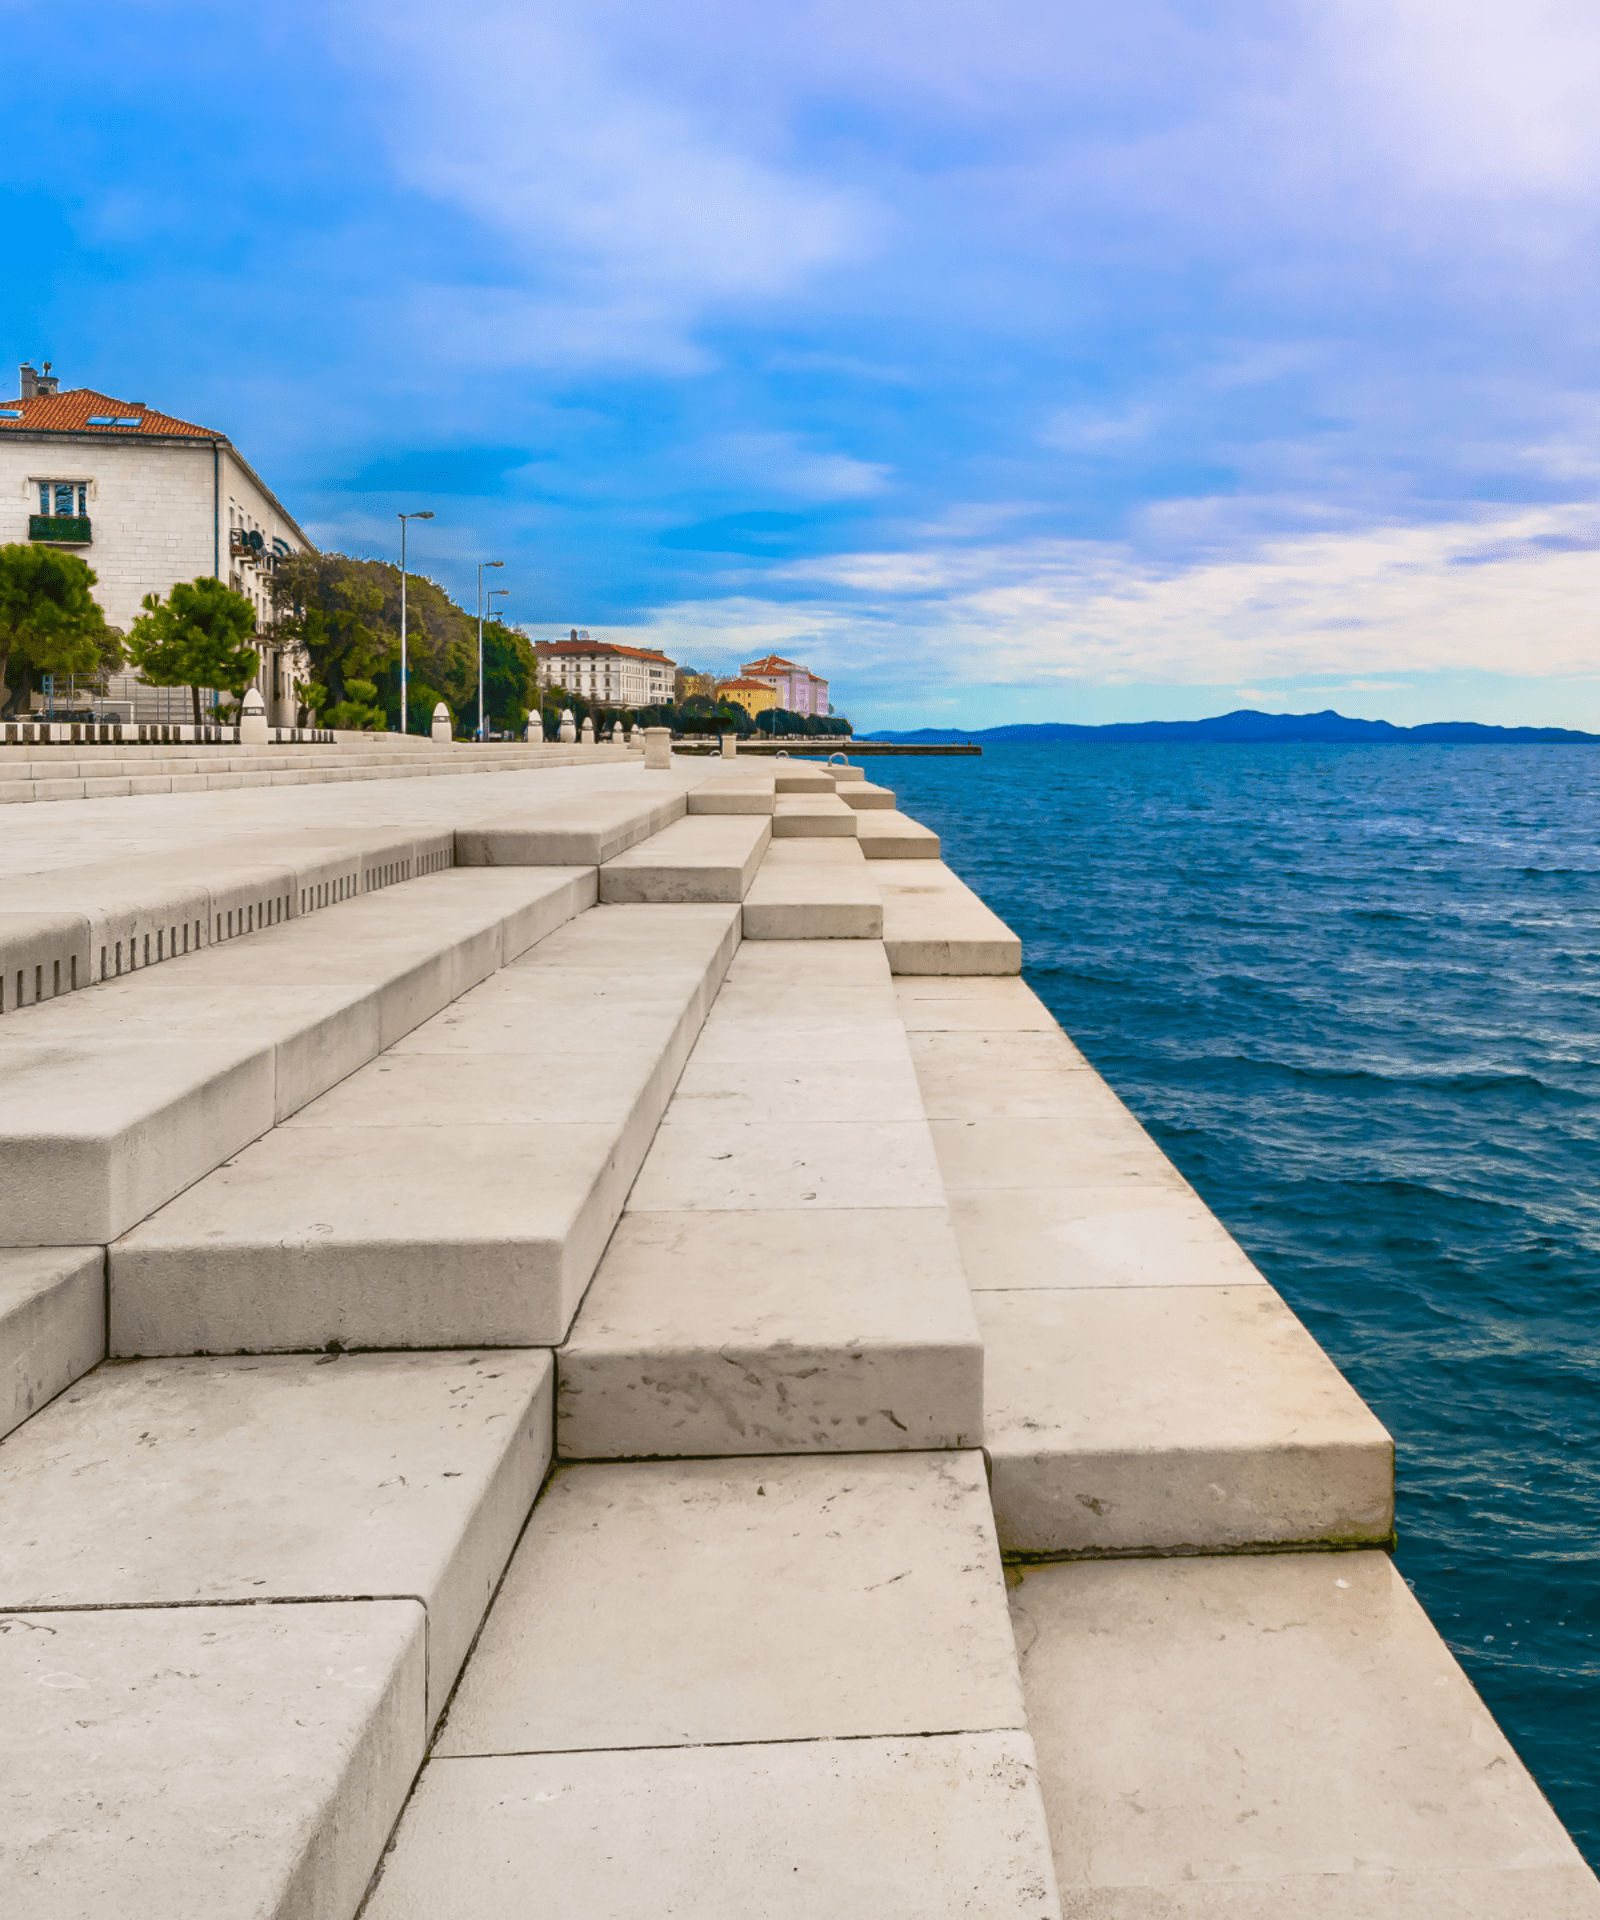 The Sea Organ is a top attraction in Croatia